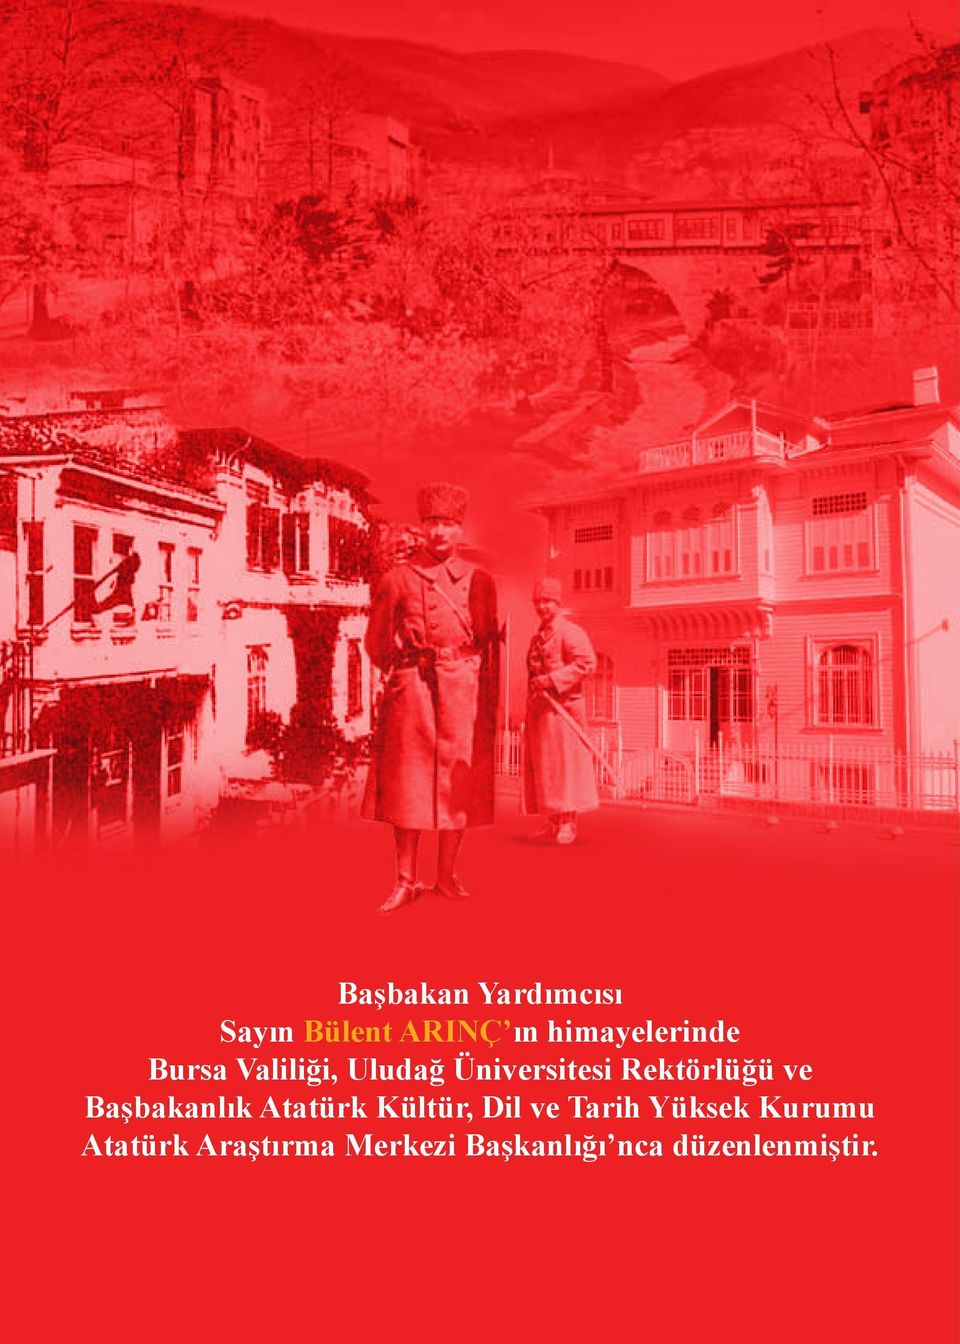 Rektörlüğü ve Başbakanlık Atatürk Kültür,